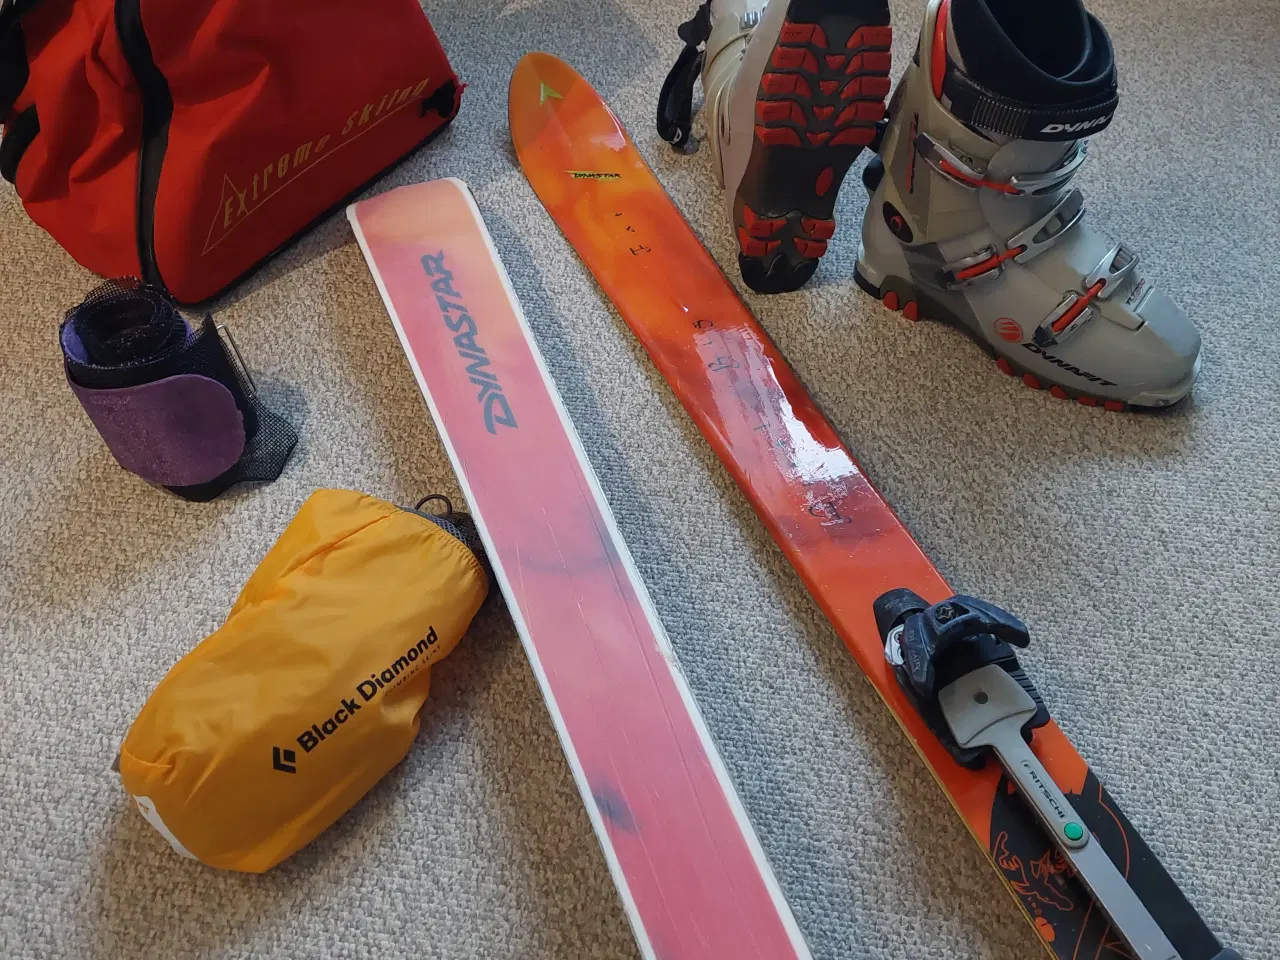 Billede 1 - Randonee ski med skin, evt. komplet pakke